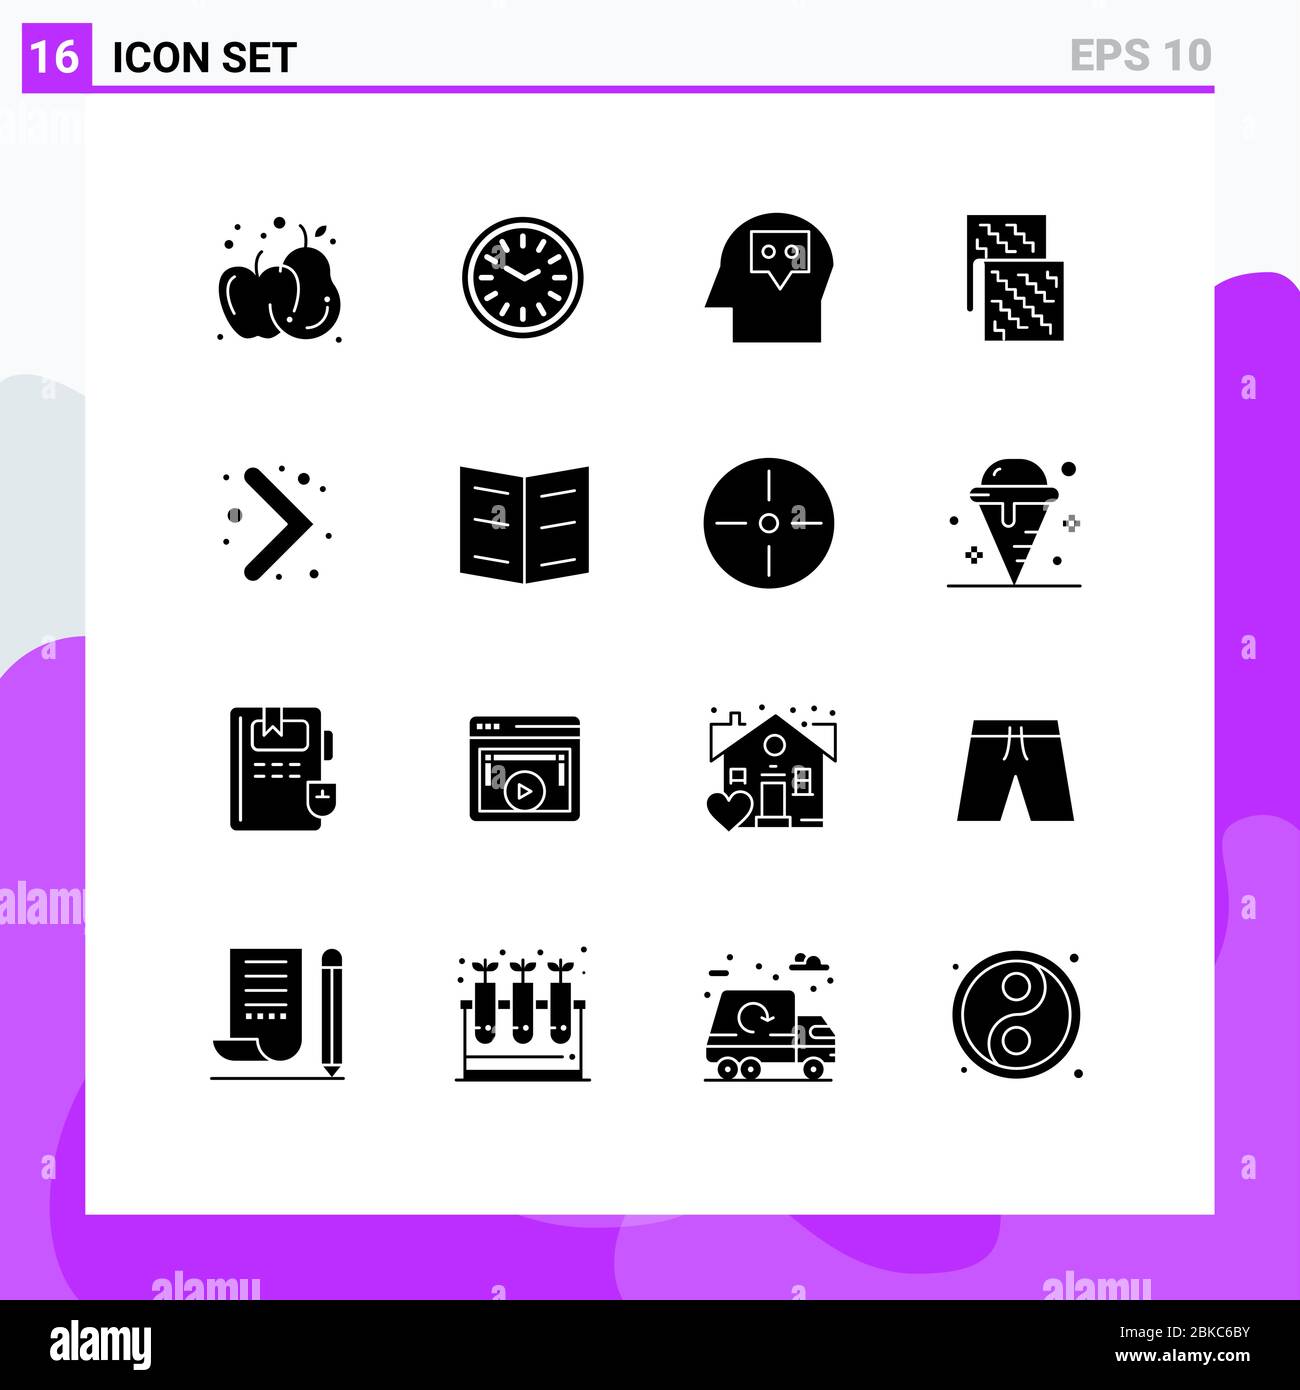 Set von 16 modernen UI-Icons Symbole Zeichen für Navigation, Material, Kopf, Zukunft, elektronisch editierbare Vektor Design-Elemente Stock Vektor